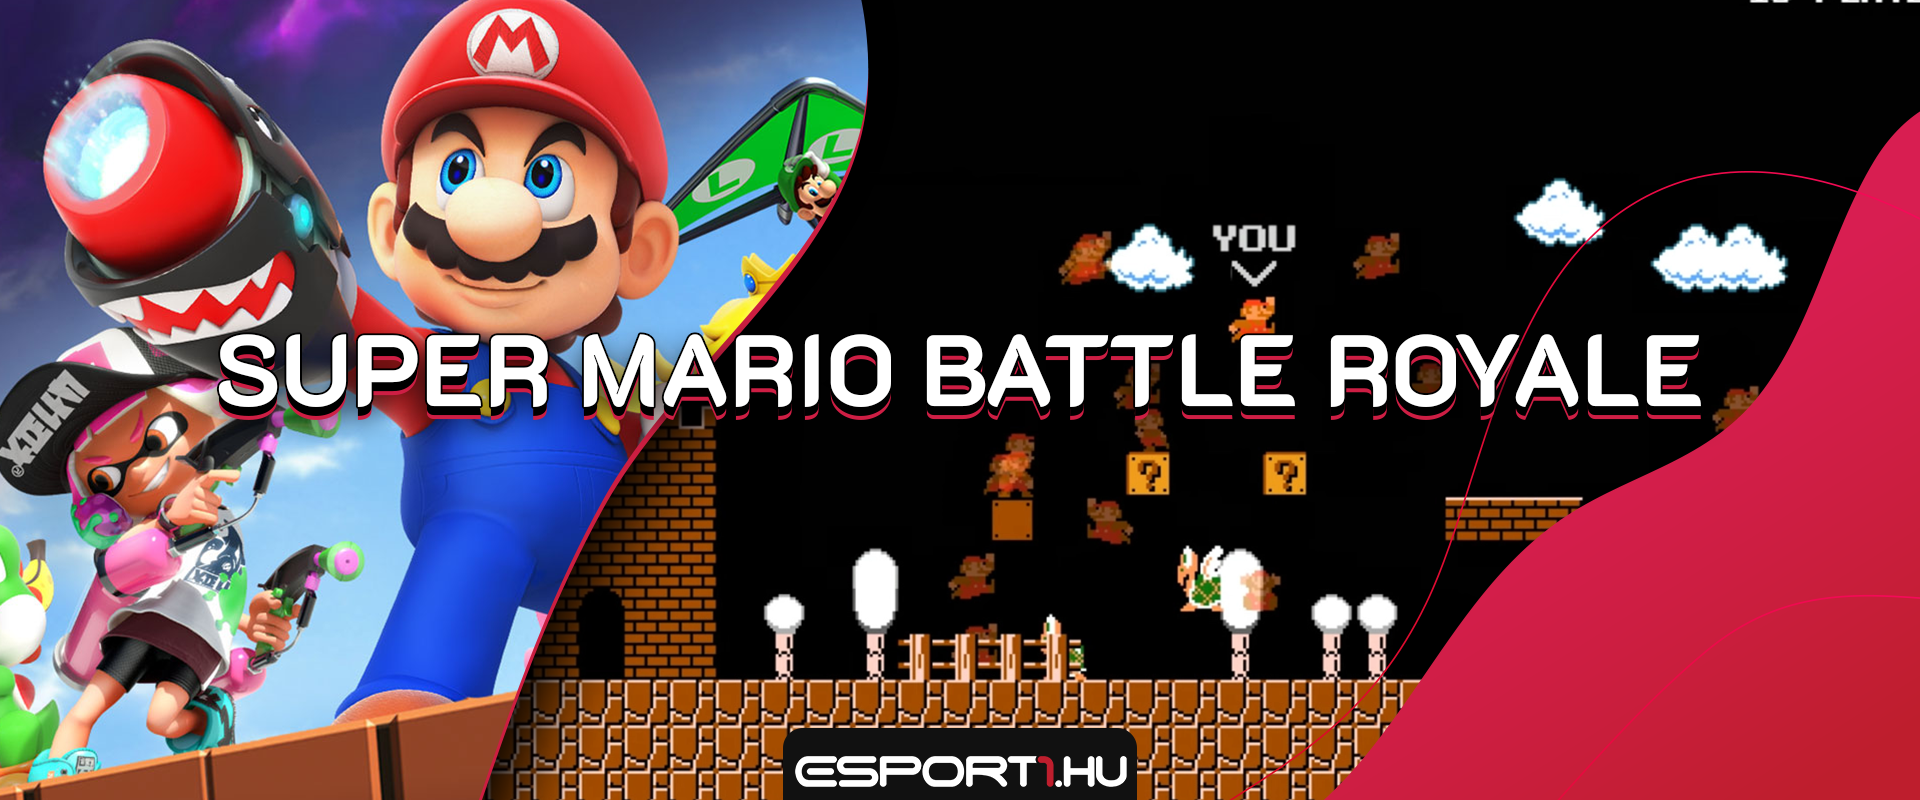 Itt van a teljesen ingyenes Super Mario Battle Royale!